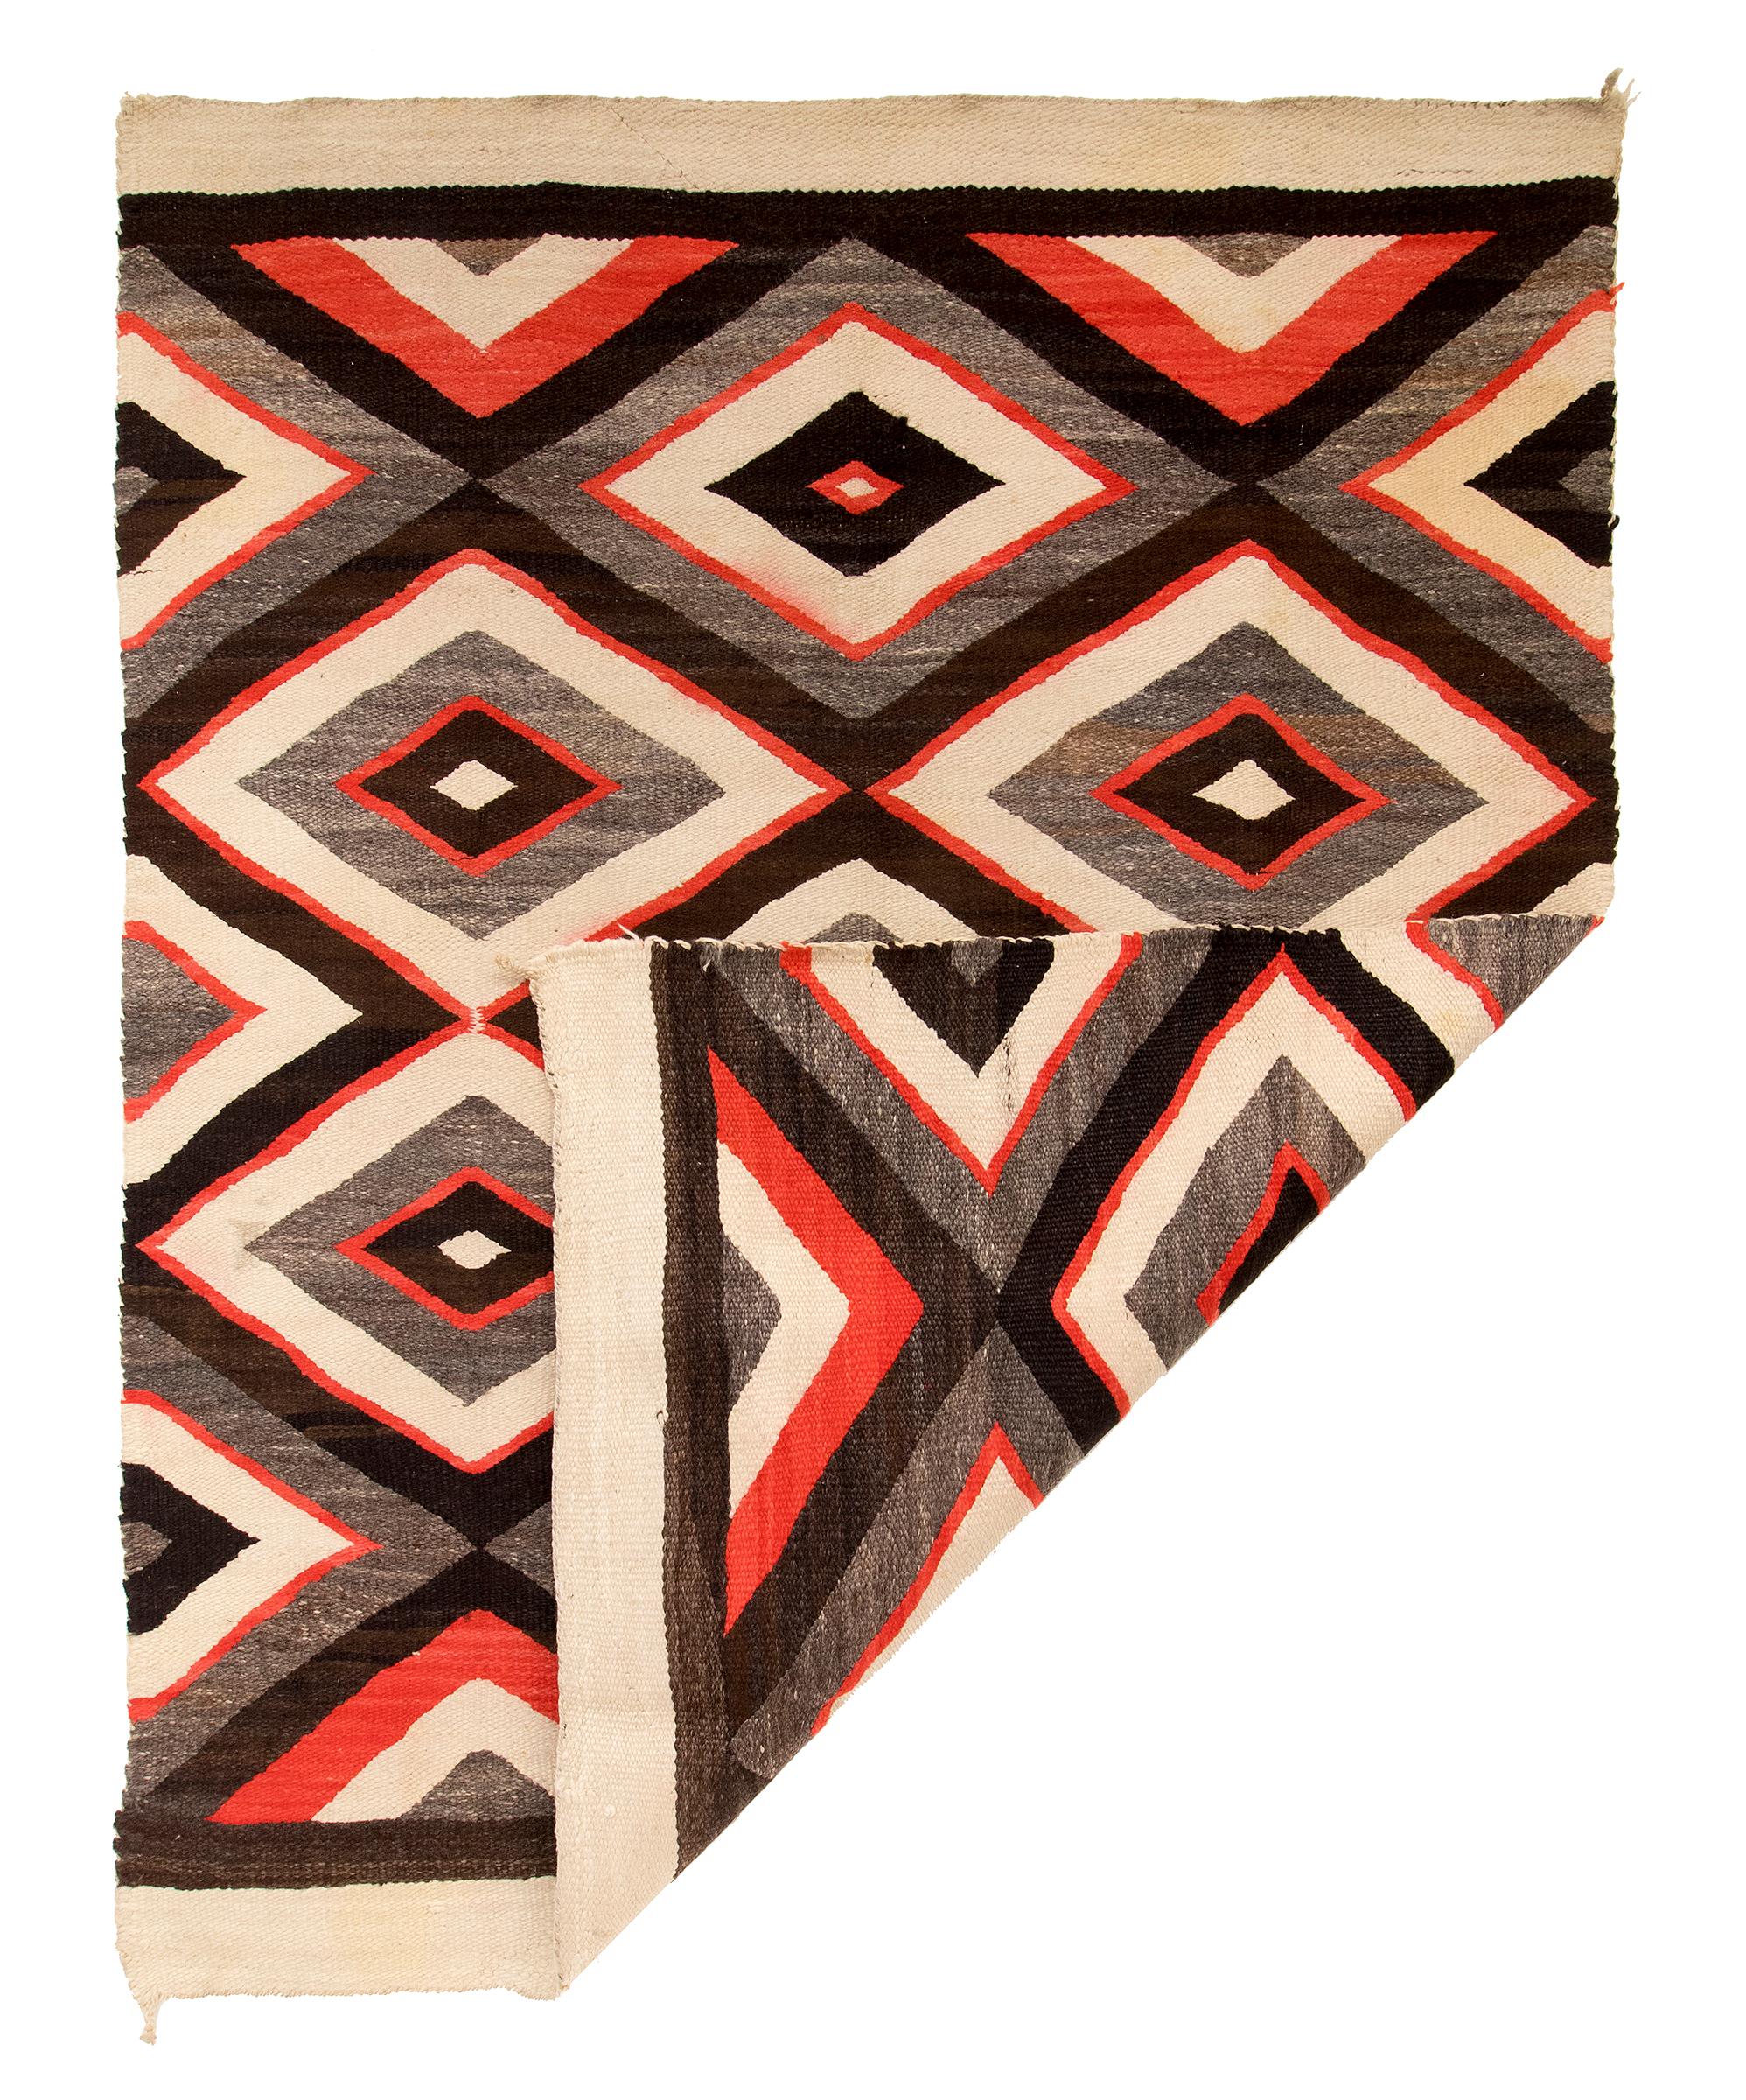 Vintage circa 1920er - 1930er Jahre Diné Navajo Teppich, Pan-Reservation, Trading Post Ära. Gewebt in einem Rautenmuster aus einheimischer, handgesponnener Wolle in den natürlichen Vliesfarben Braun-Schwarz, Graubraun und Elfenbein (Weiß) mit